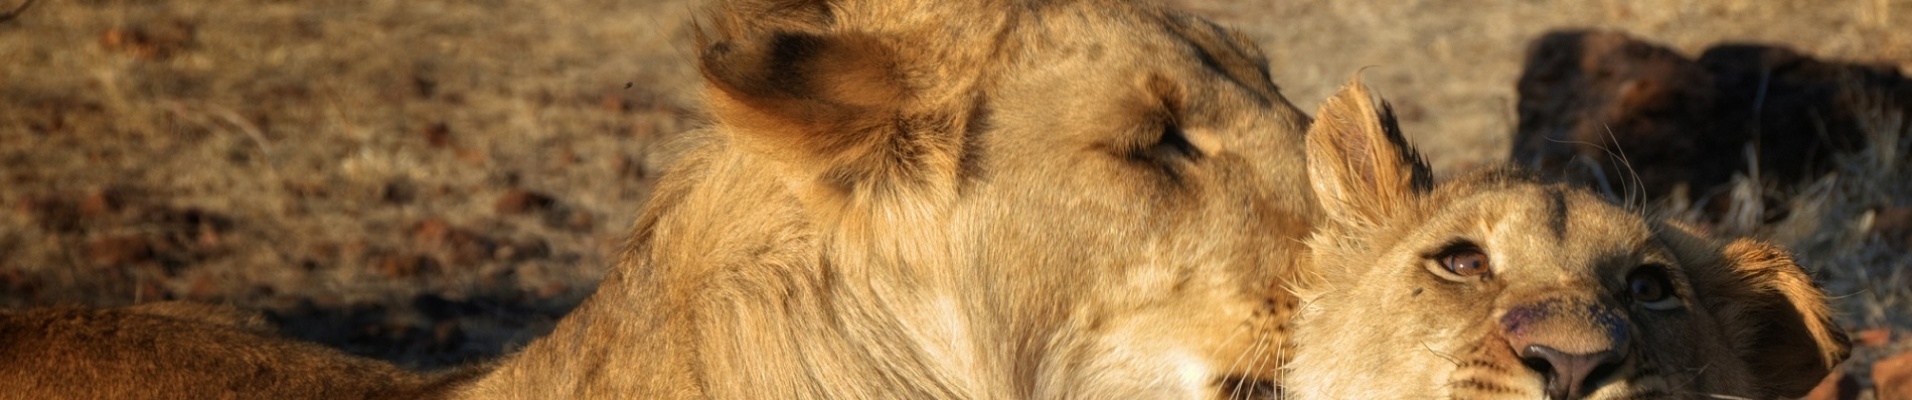 Amazing Lions in wildlife